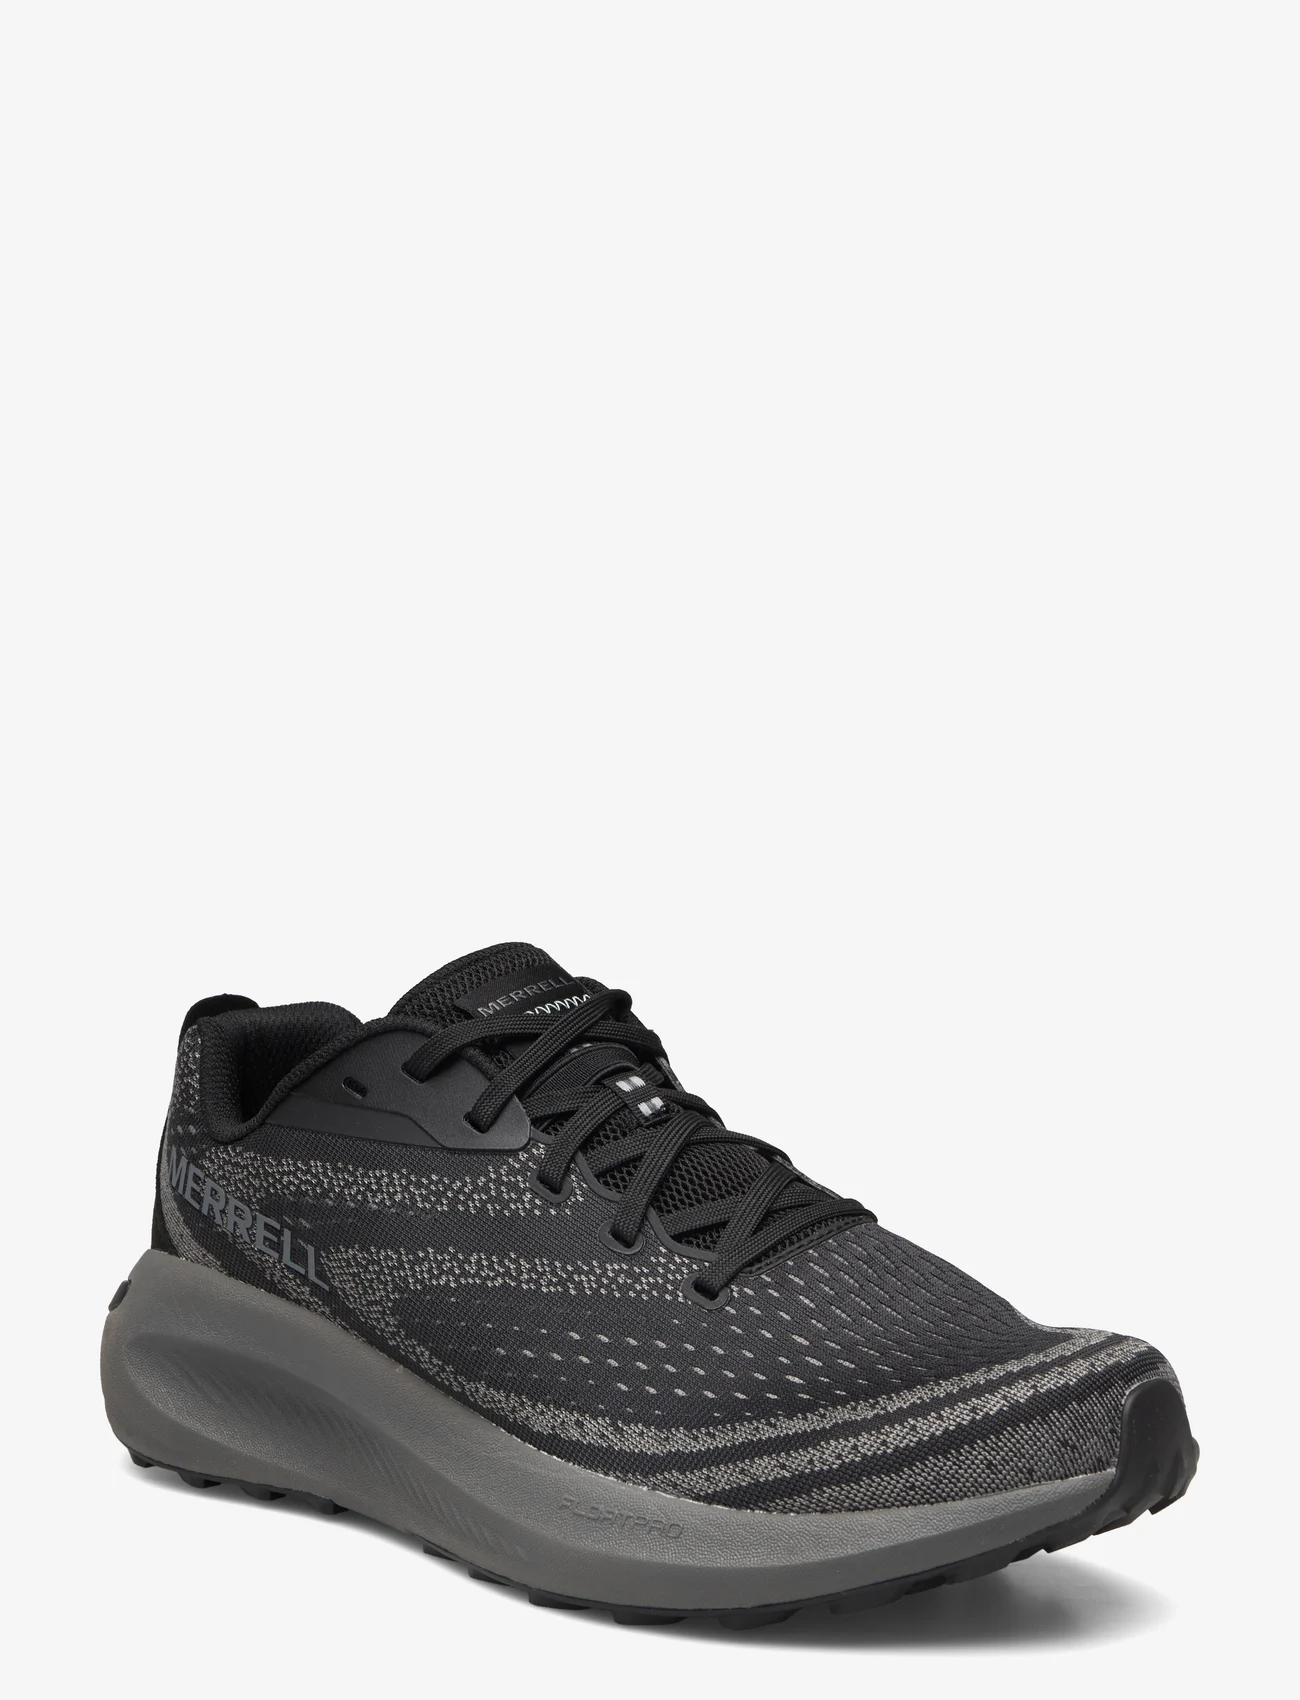 Merrell - Men's Morphlite - Black/Asphalt - running shoes - black/asphalt - 0